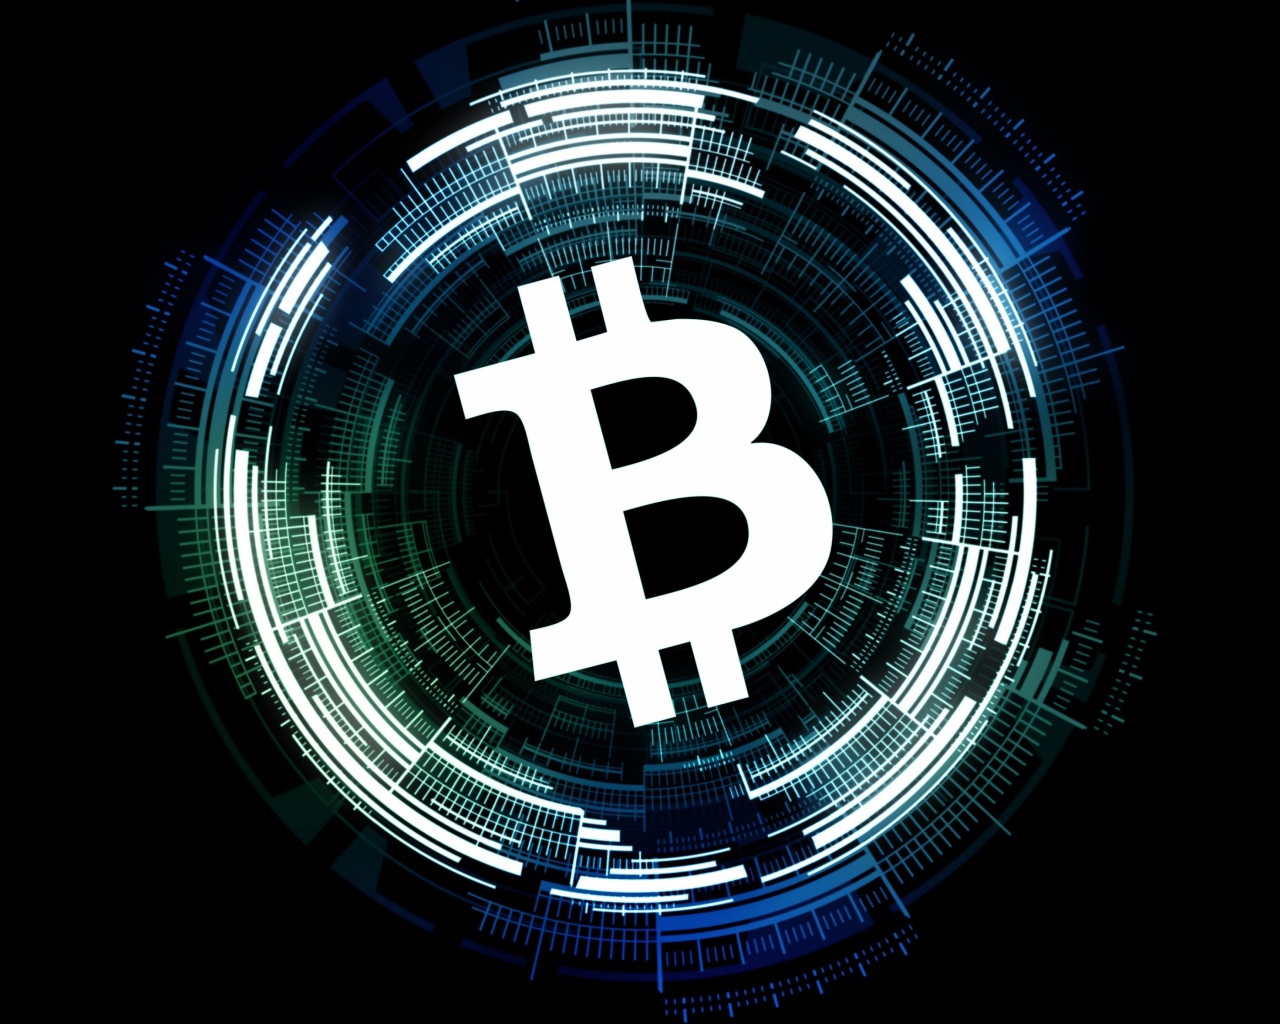 Bitcoin white icon on black background